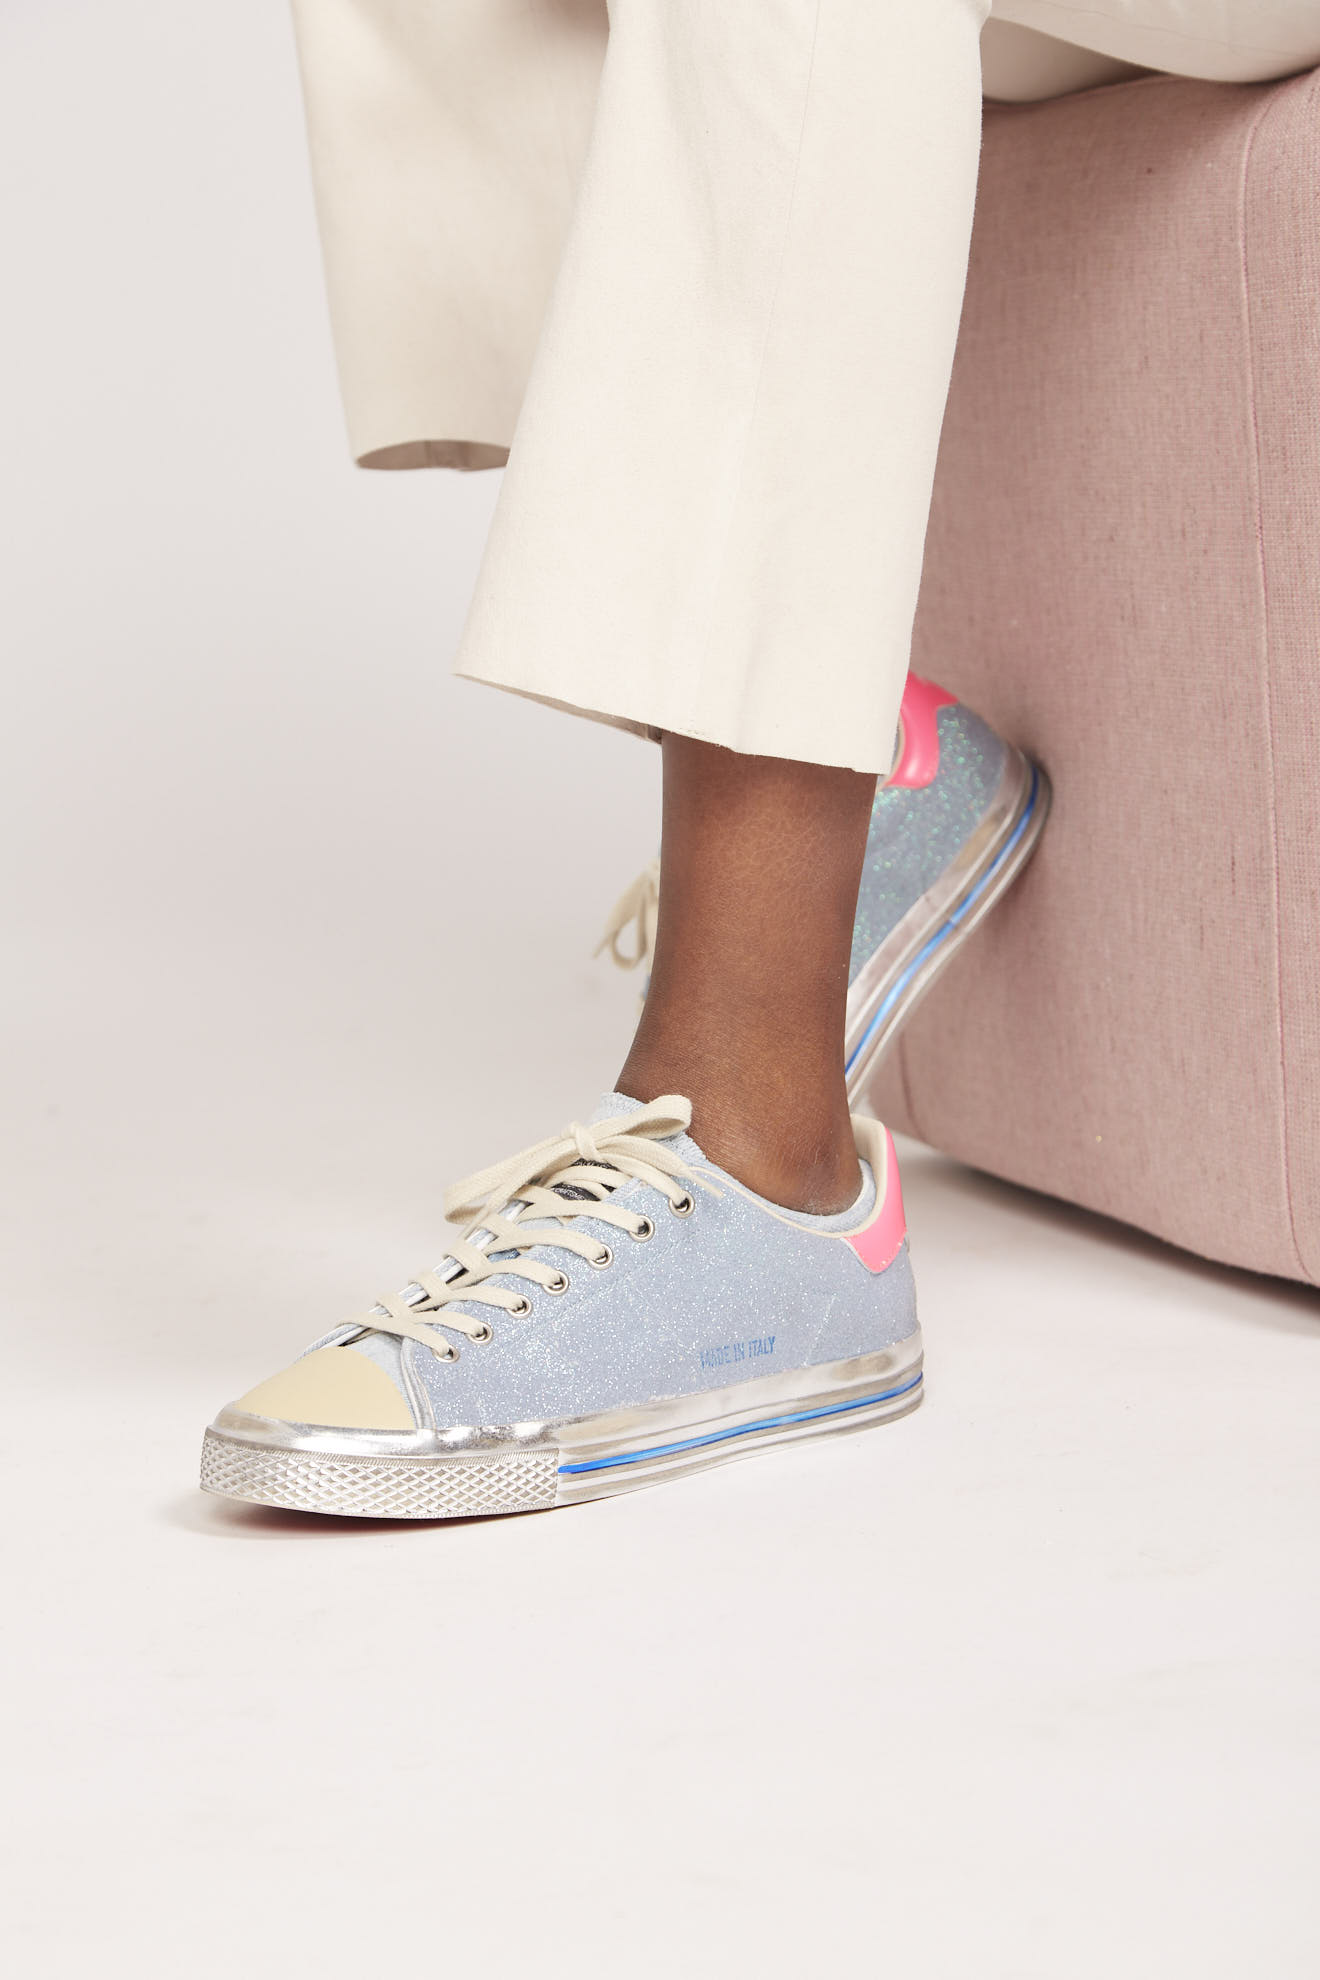 hidnander shoes blue pink detail branded cotton model side